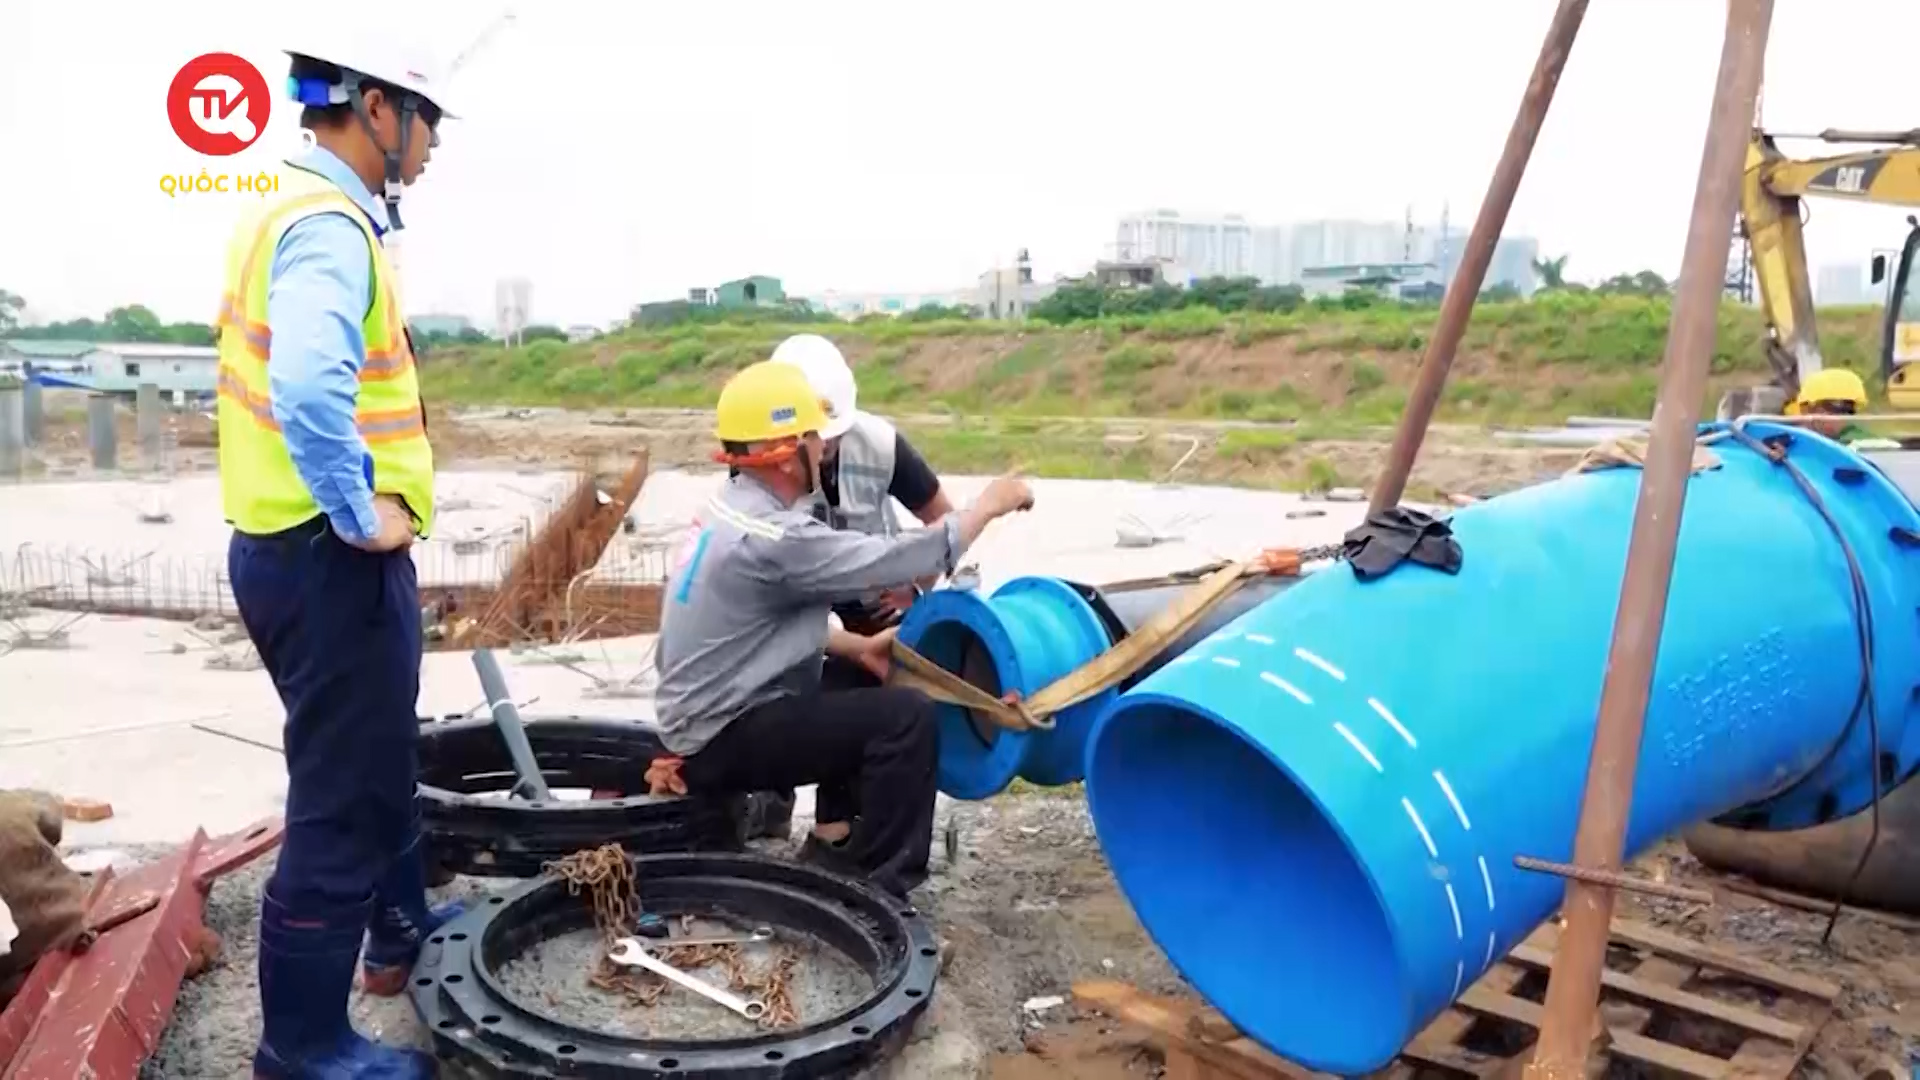 Câu chuyện hôm nay: 78% lượng nước thải hằng ngày tại Hà Nội xả thẳng ra môi trường